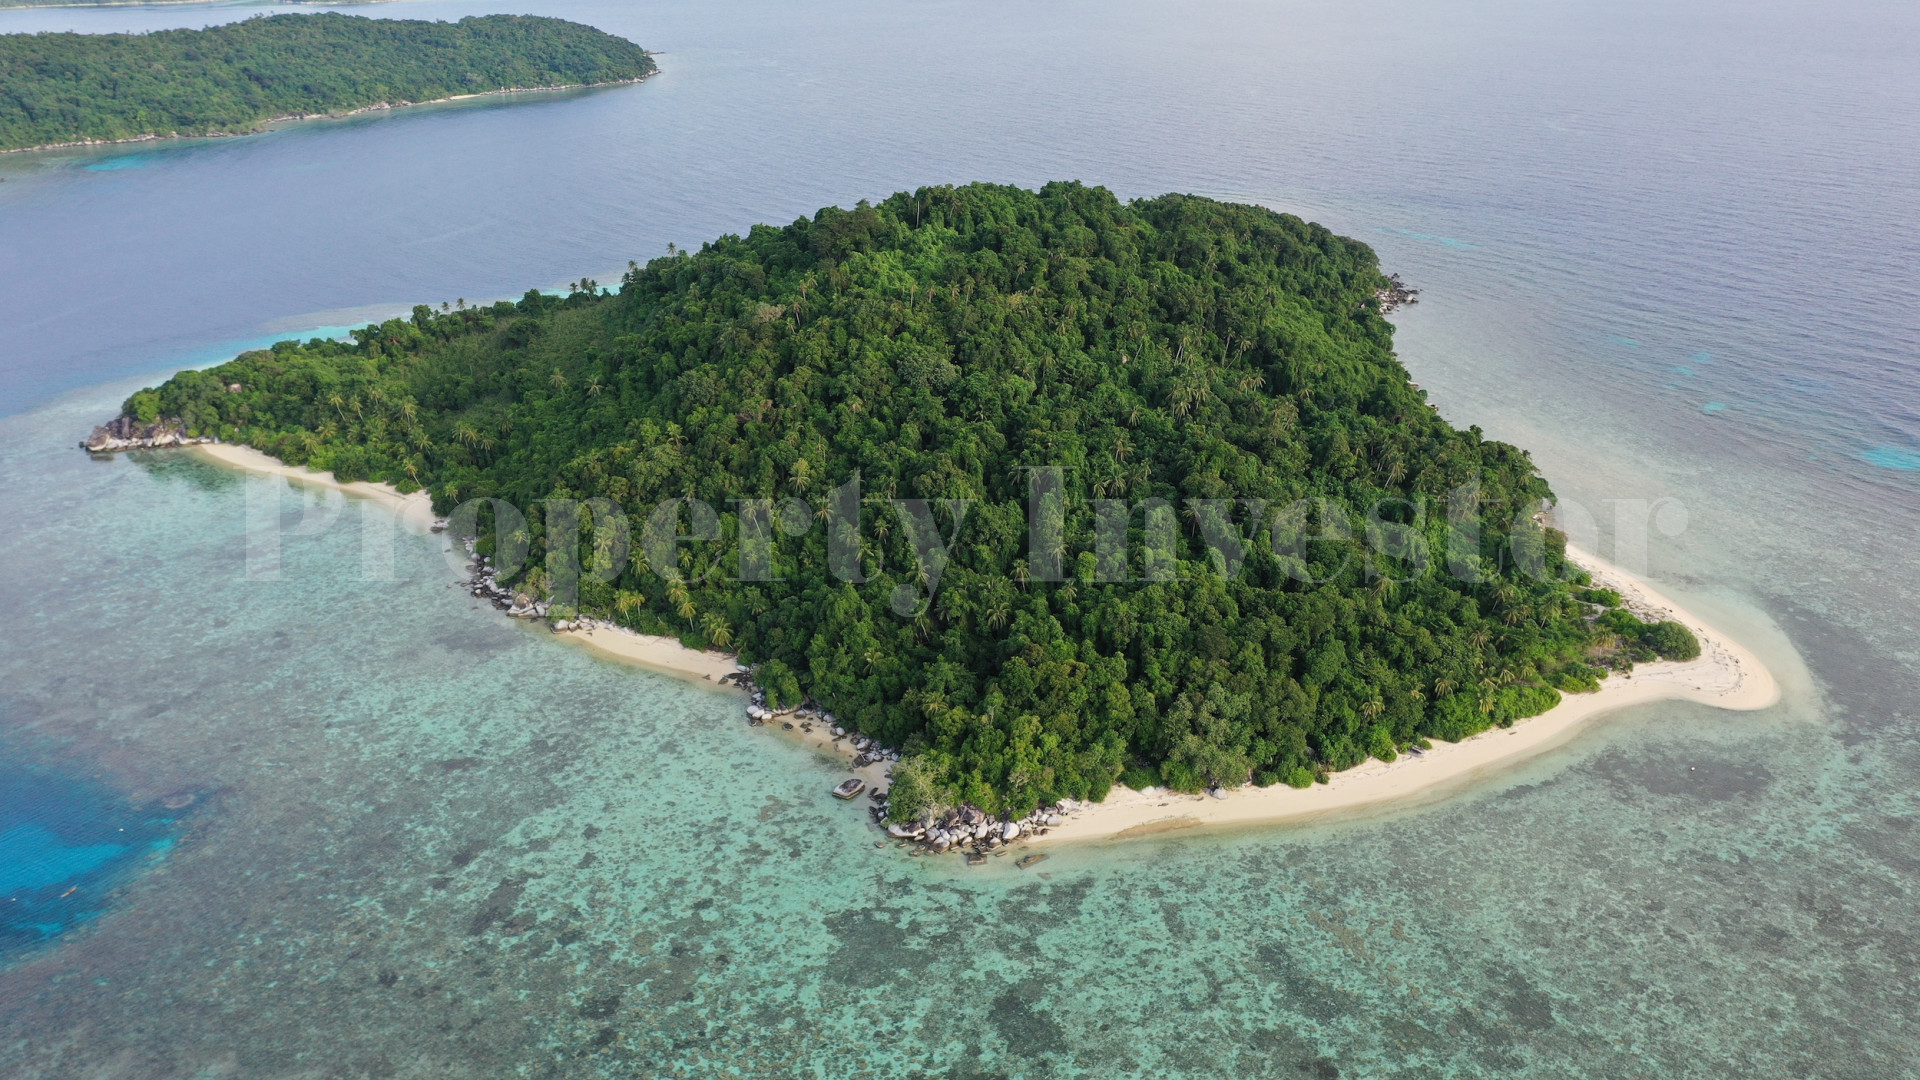 Потрясающий нетронутый остров 27 гектаров под коммерческое развитие на островах Риау, Индонезия